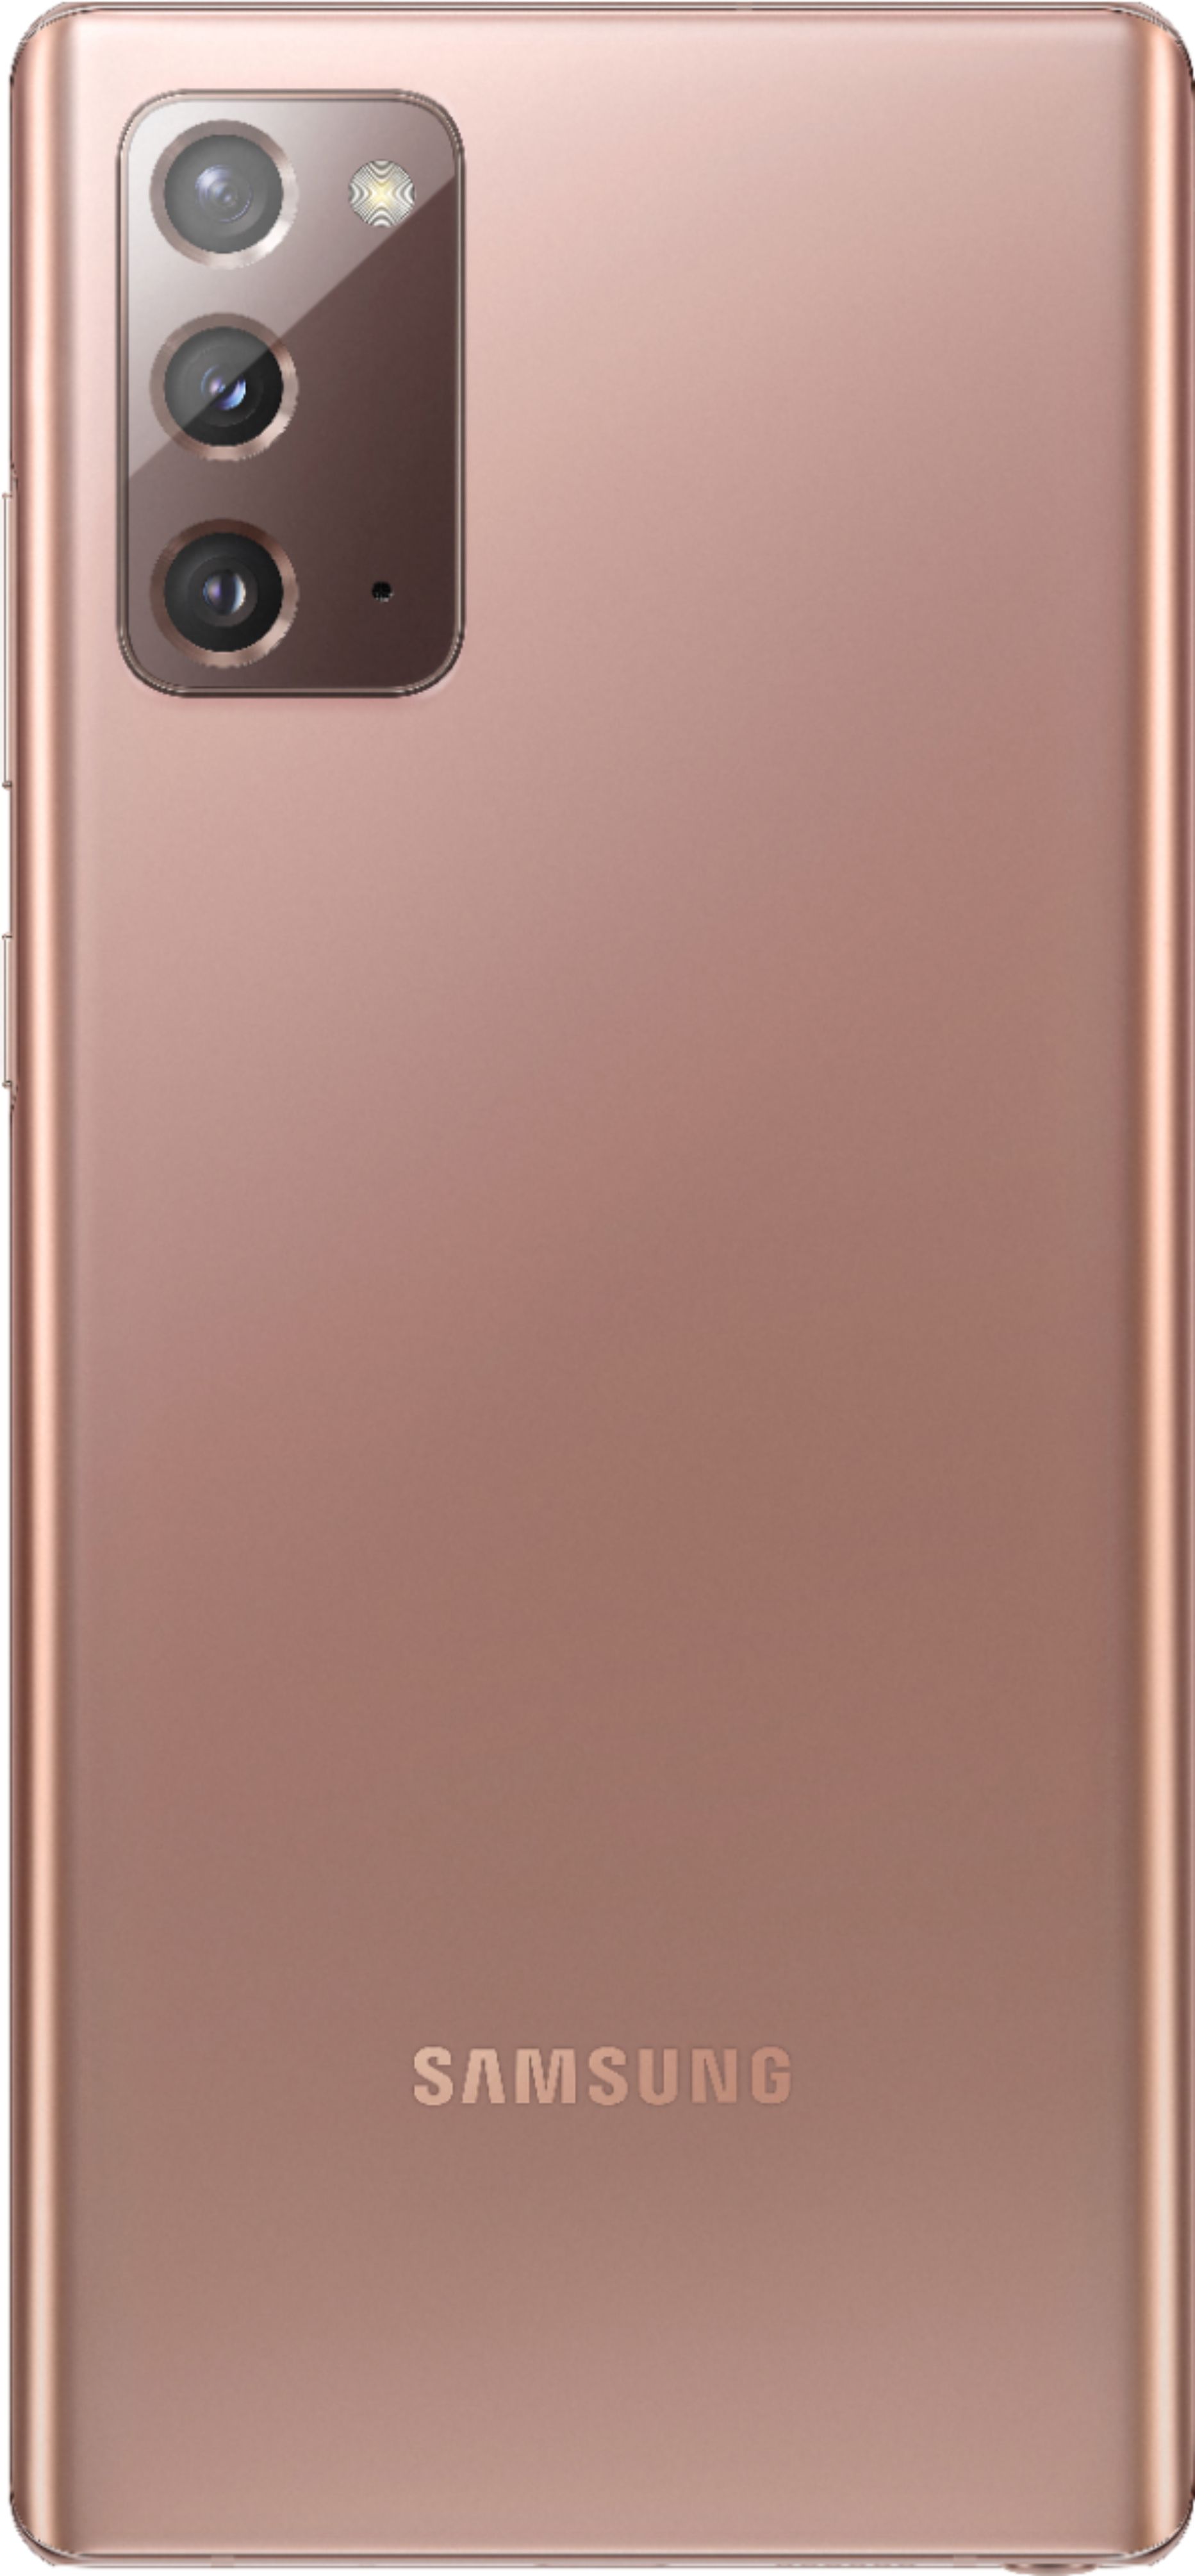 スマートフォン/携帯電話 スマートフォン本体 Best Buy: Samsung Galaxy Note20 5G 128GB (Unlocked) Mystic Bronze 